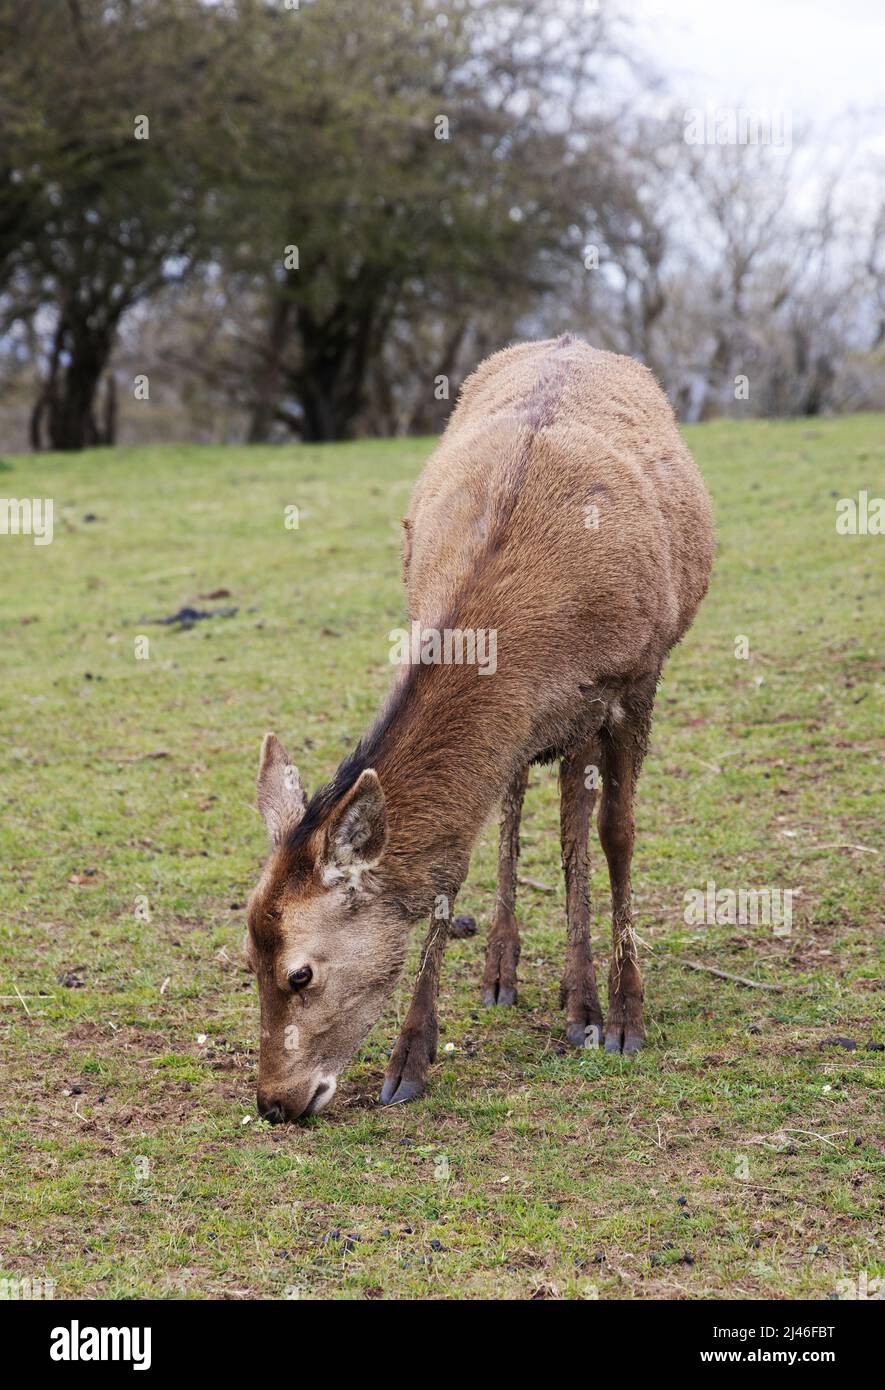 Fauna del Reino Unido; ciervo rojo del Reino Unido; una hembra adulta del ciervo rojo, Cervus elaphus, aka un trasero, pastando en un campo, Worcestershire Reino Unido Foto de stock